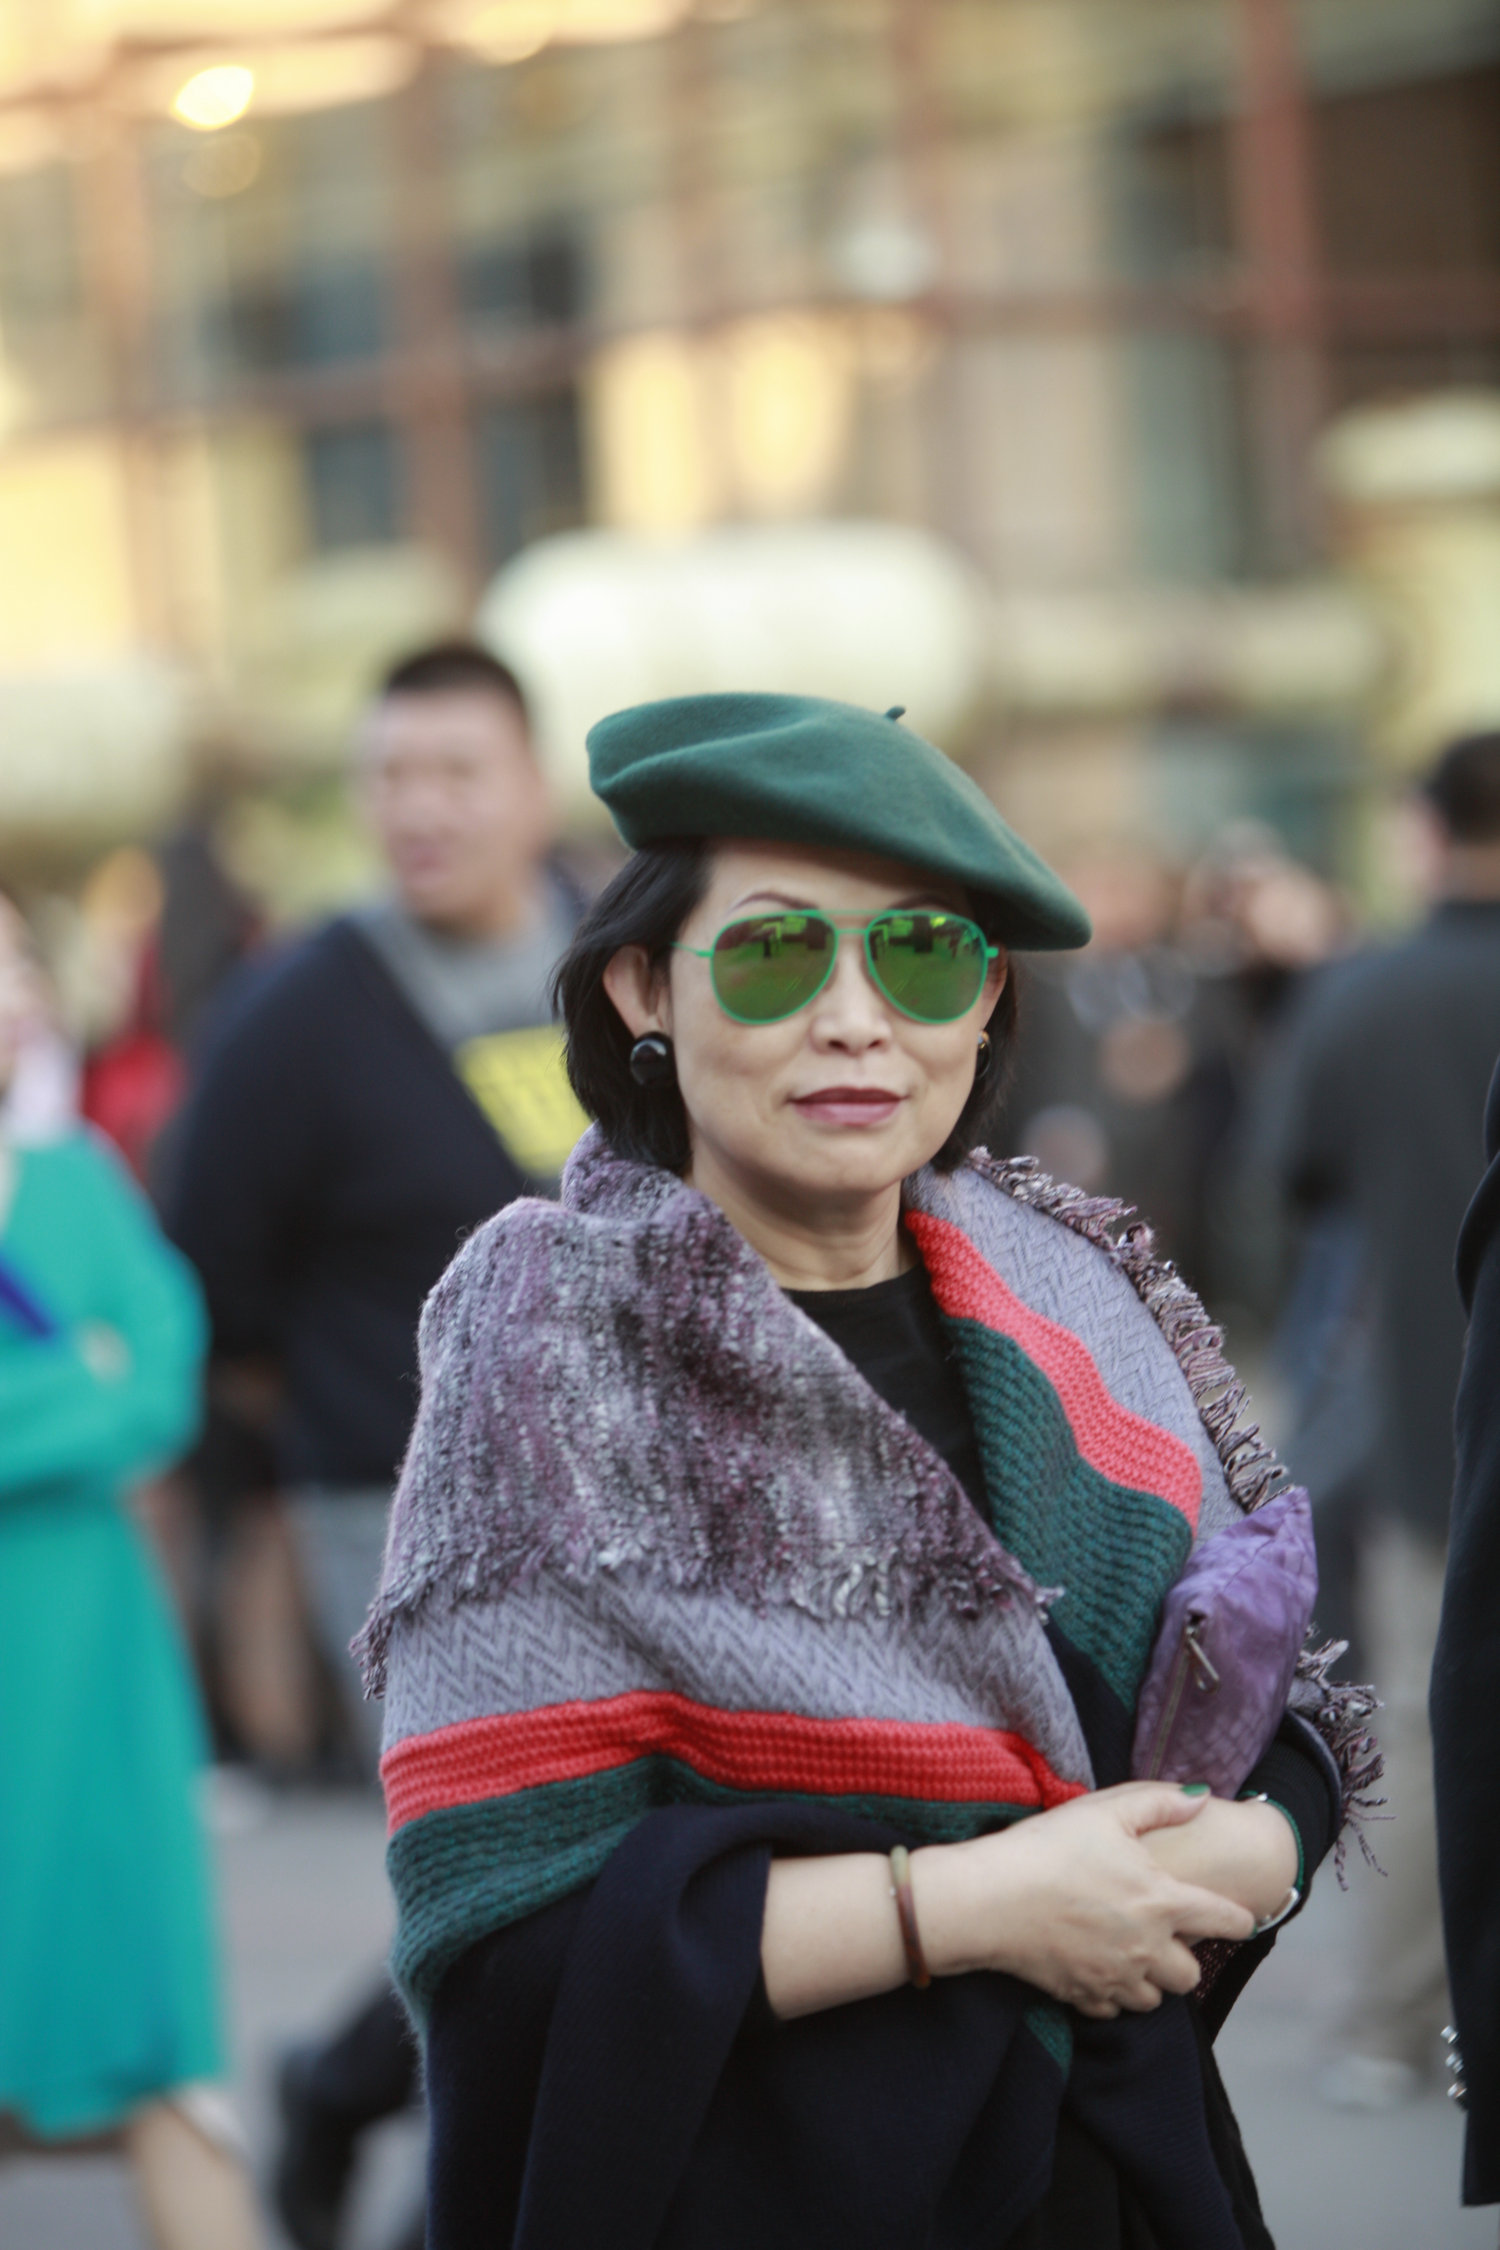 绿帽子和绿眼镜为秋色点缀了生机，走在街上想不抢眼都很难。